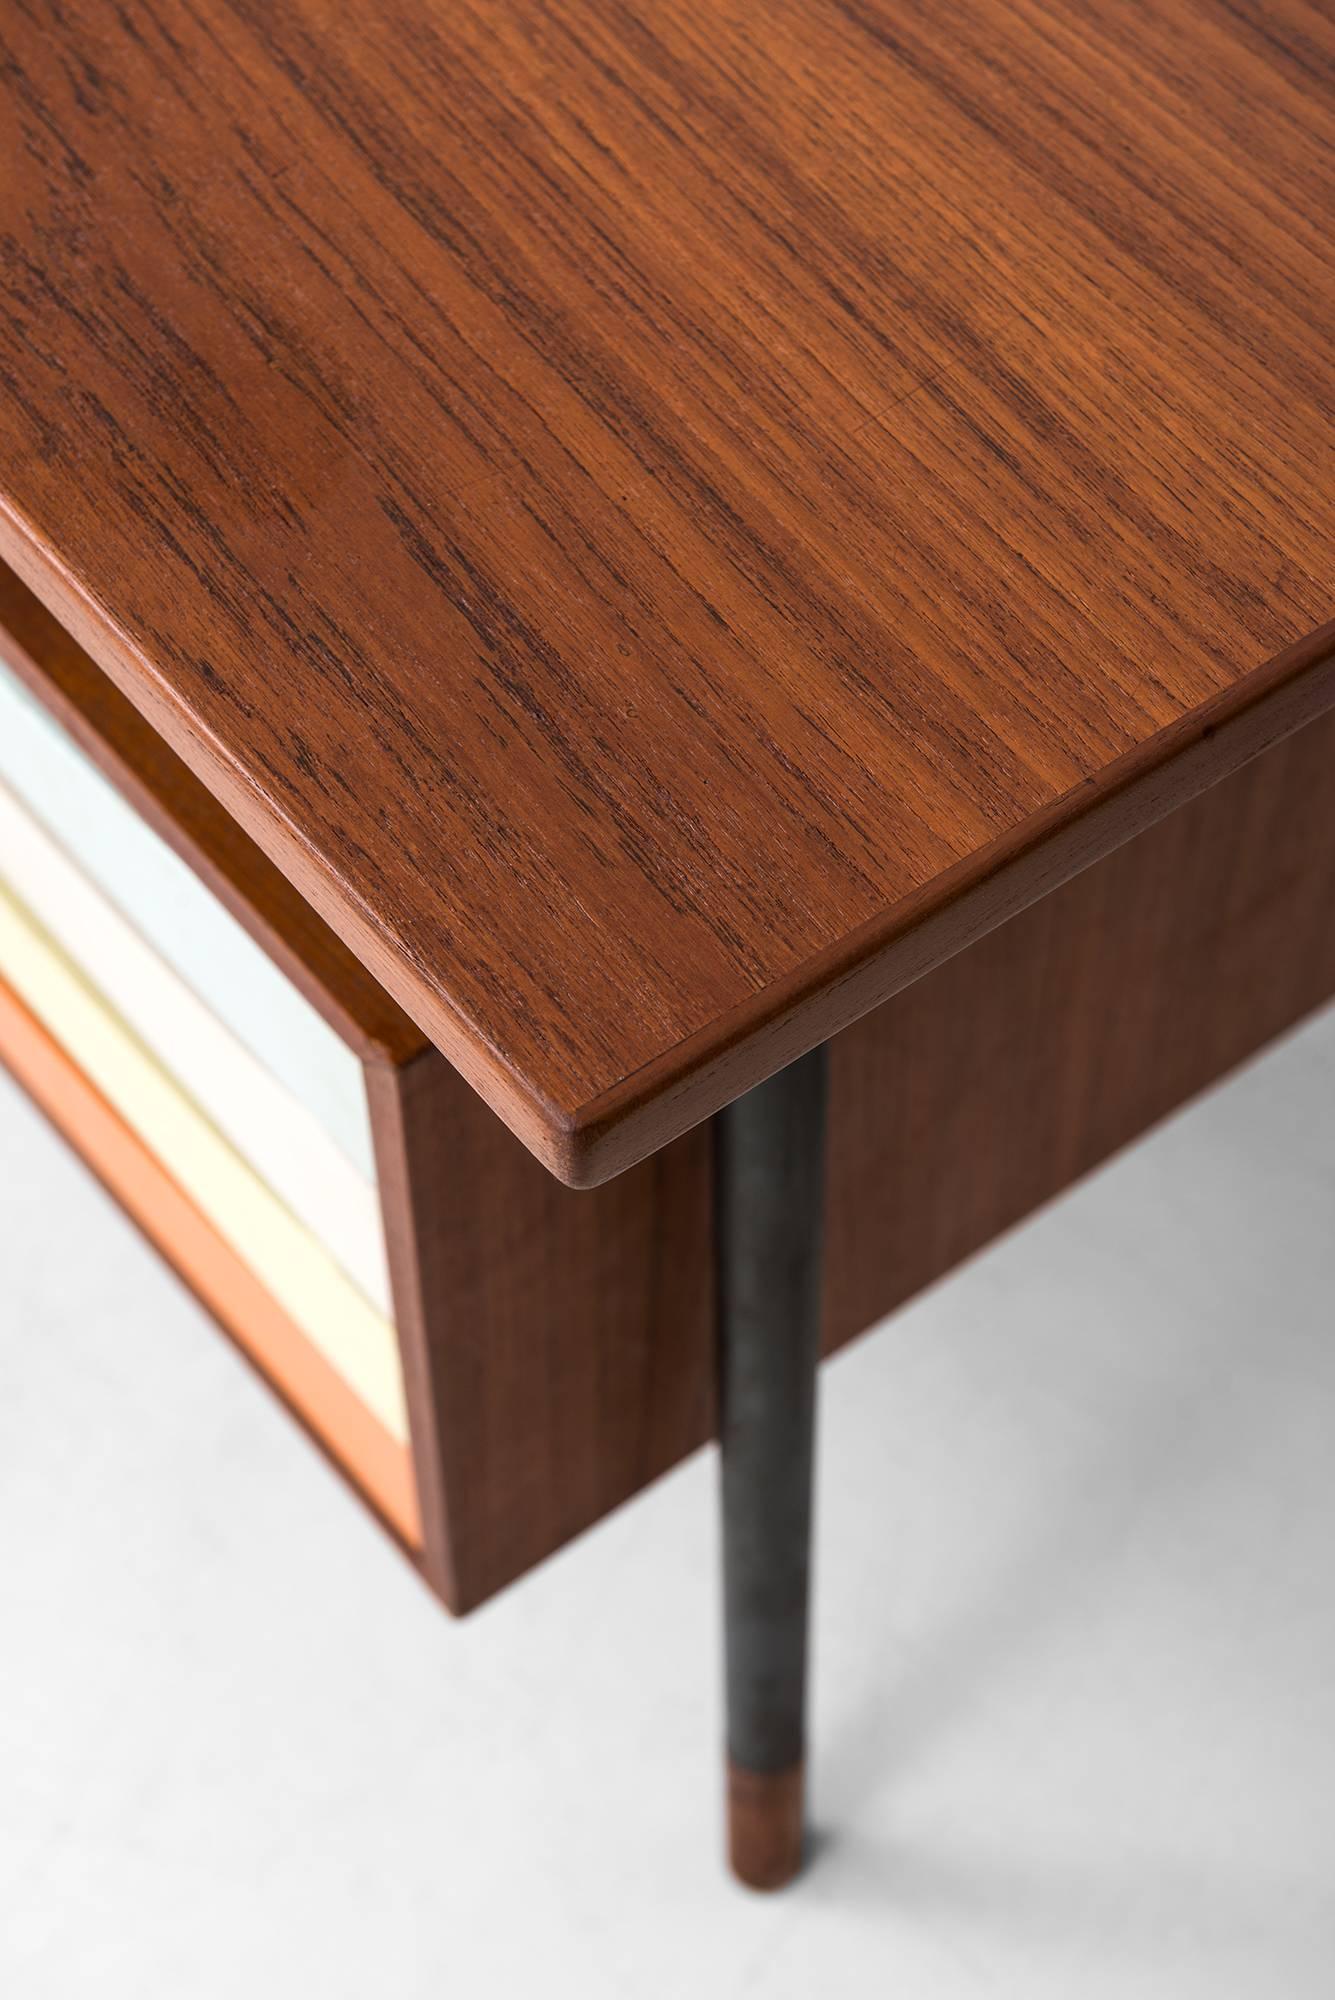 Rare desk model BO-69 / Nyhavn designed by Finn Juhl. Produced by Bovirke in Denmark. Provenance: Architect Finn Gaardboe.